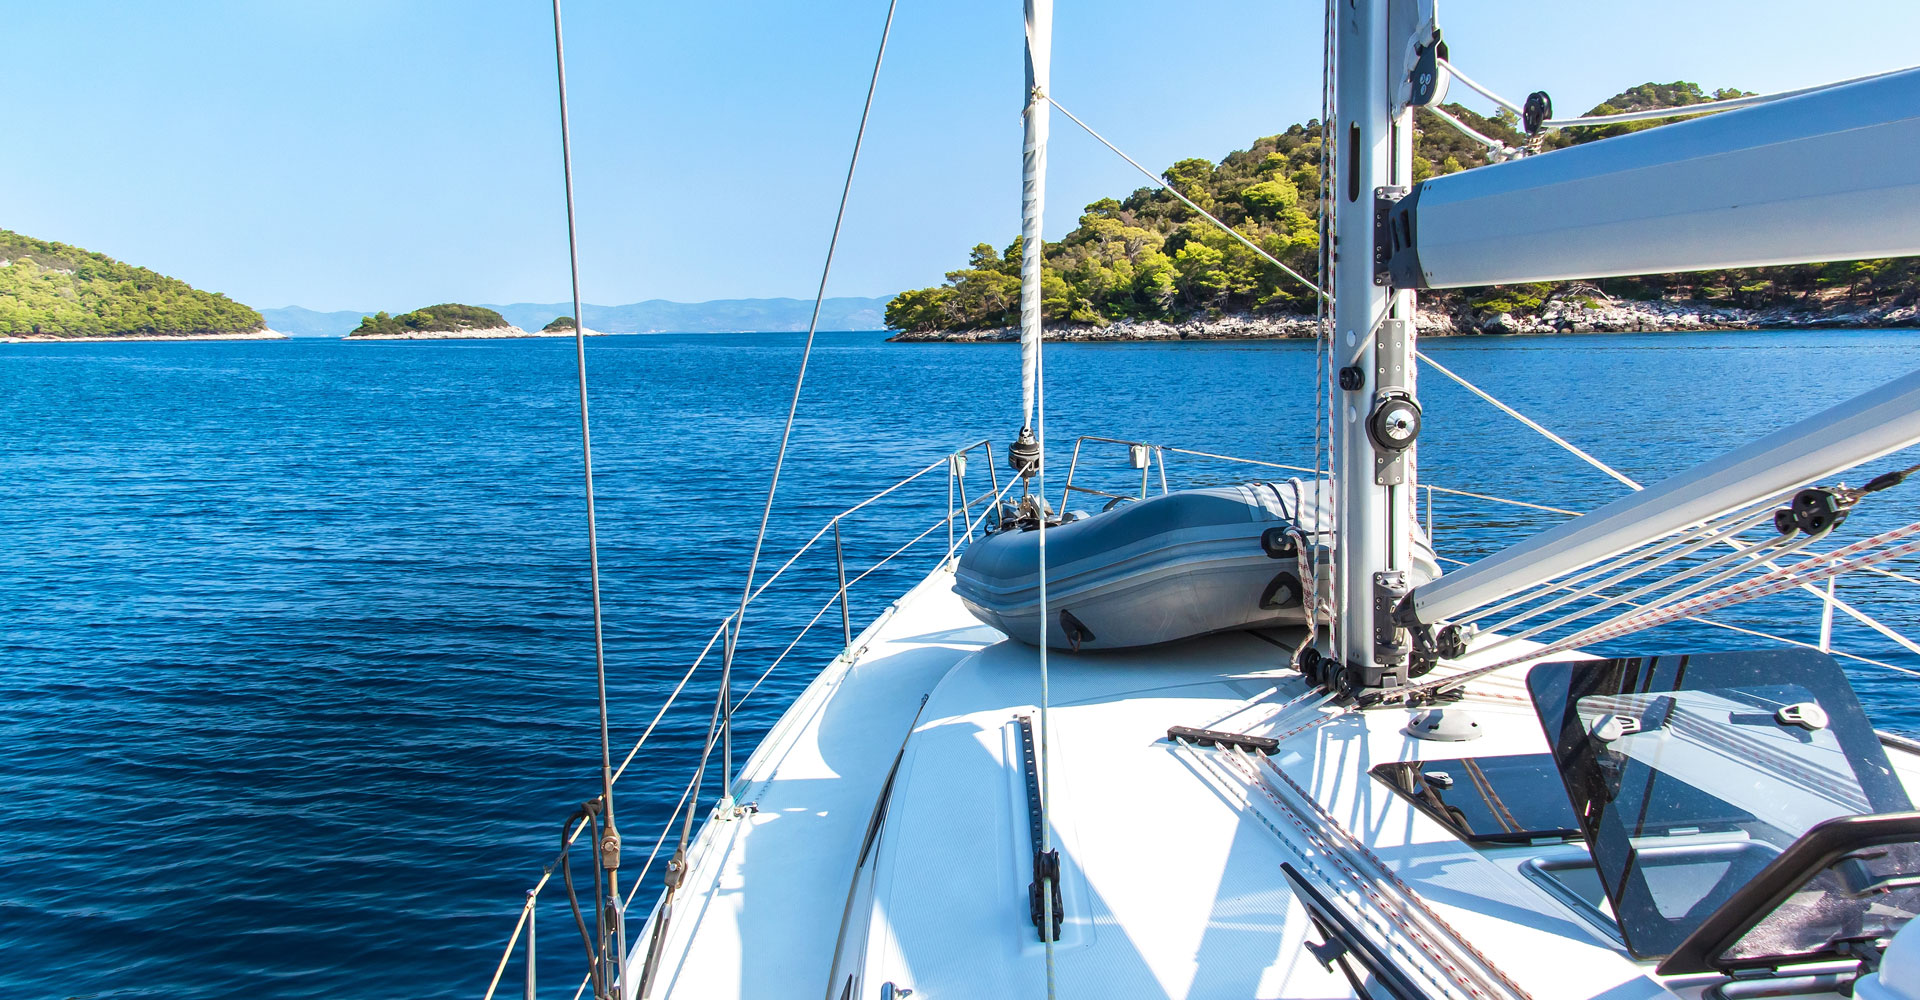 Croatia Yacht Charter Guide